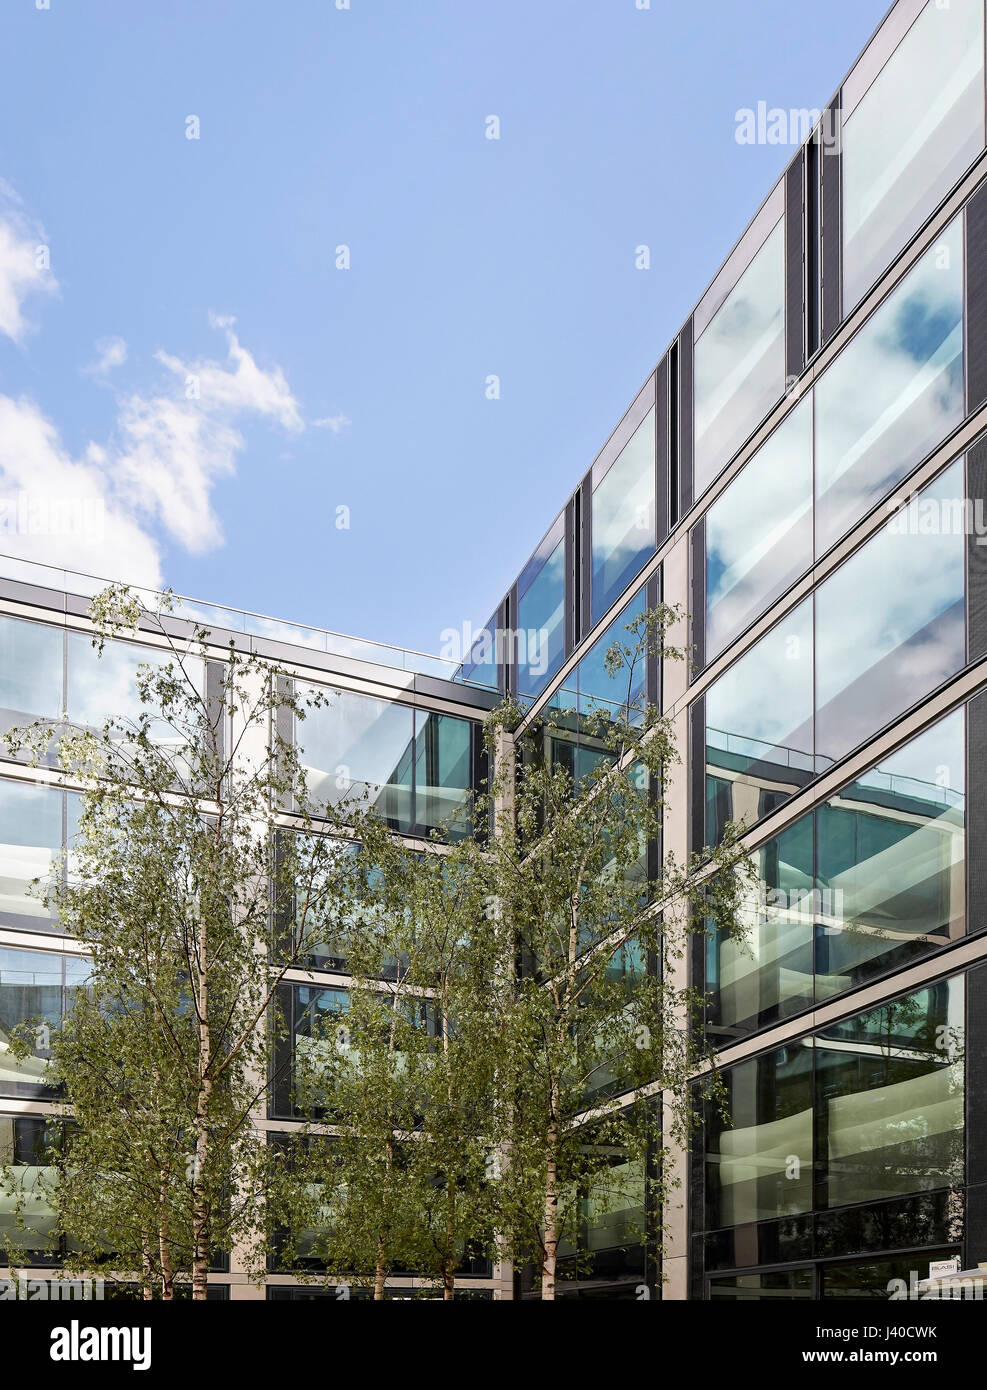 Begrünten Innenhof mit Glasfassaden. Chancery Lane, London, Vereinigtes Königreich. Architekt: Bennetts Associates Architects, 2015. Stockfoto